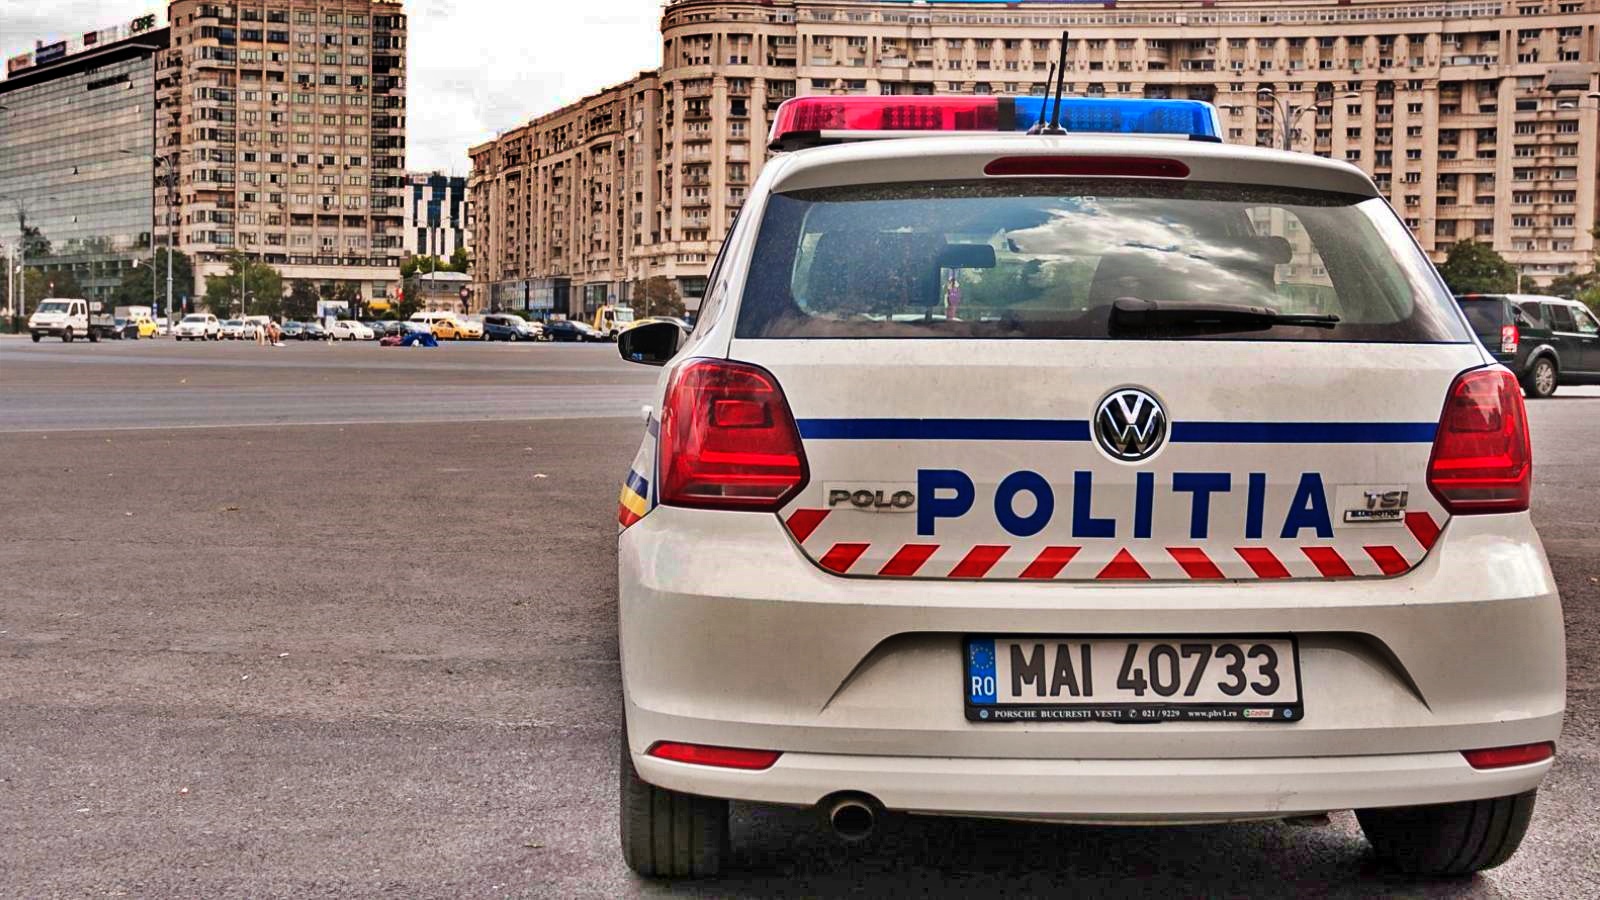 Romanian poliisi Viesti miljoonille romanialaisille kaikkialla maassa